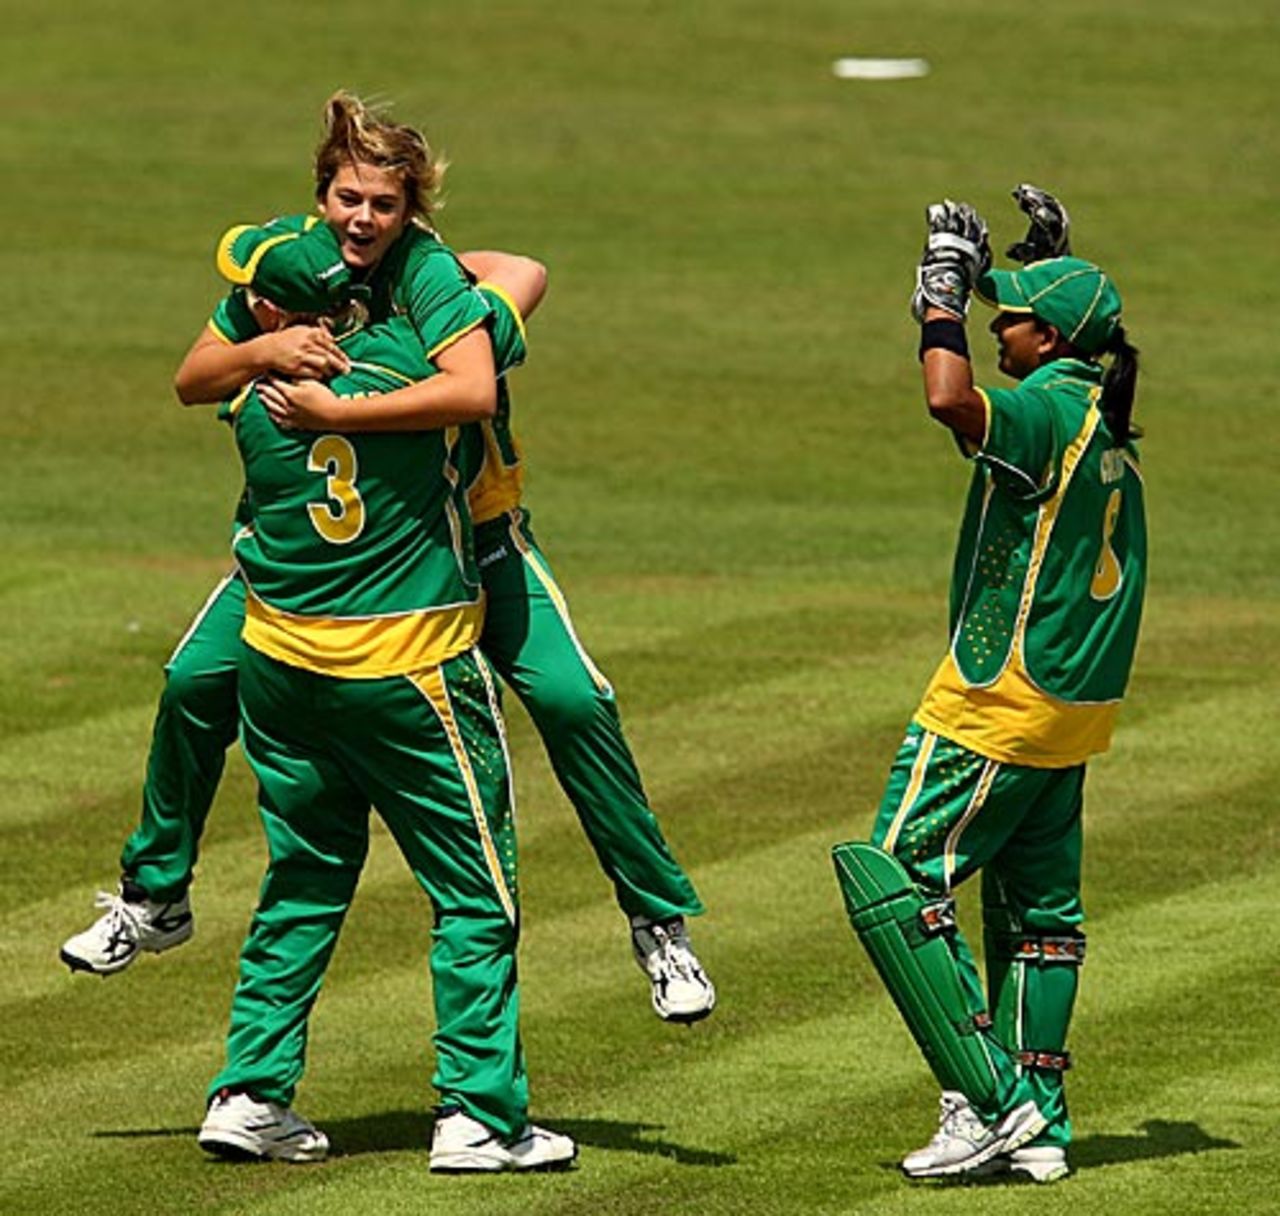 Dane van Niekerk too 2 for 26, South Africa Women v West Indies Women, ICC Women's World Twenty20, Taunton, June 11, 2009